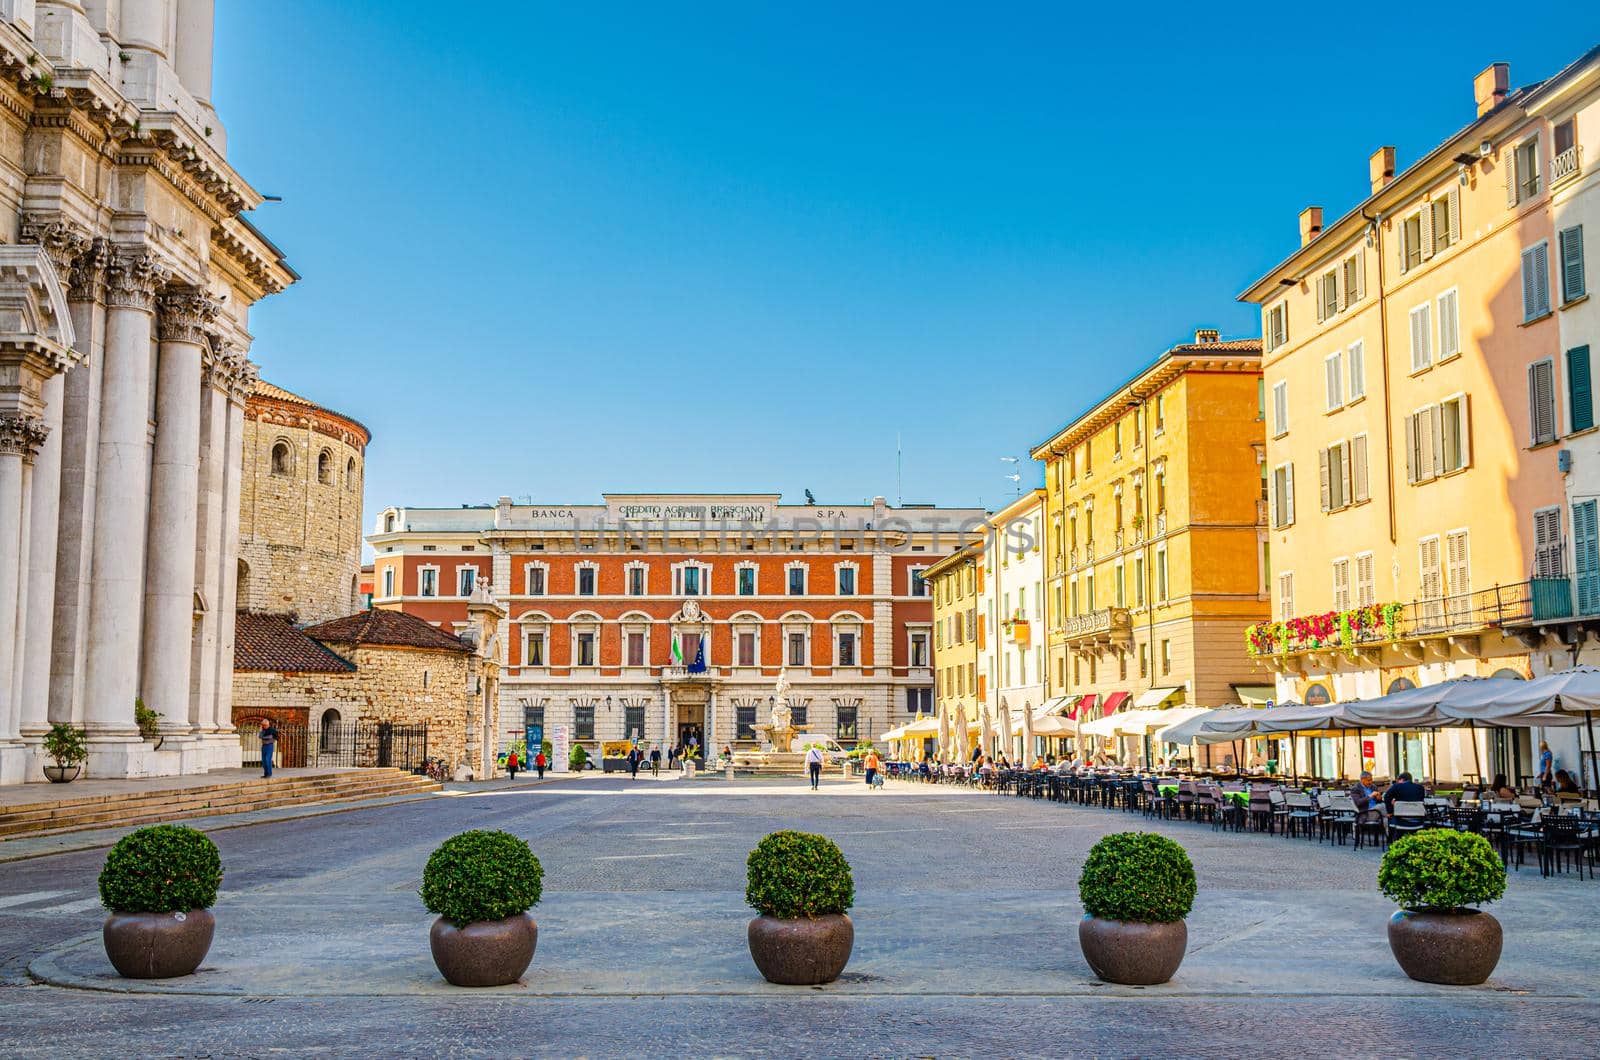 Piazza Paolo VI Square with Santa Maria Assunta New Cathedral by Aliaksandr_Antanovich